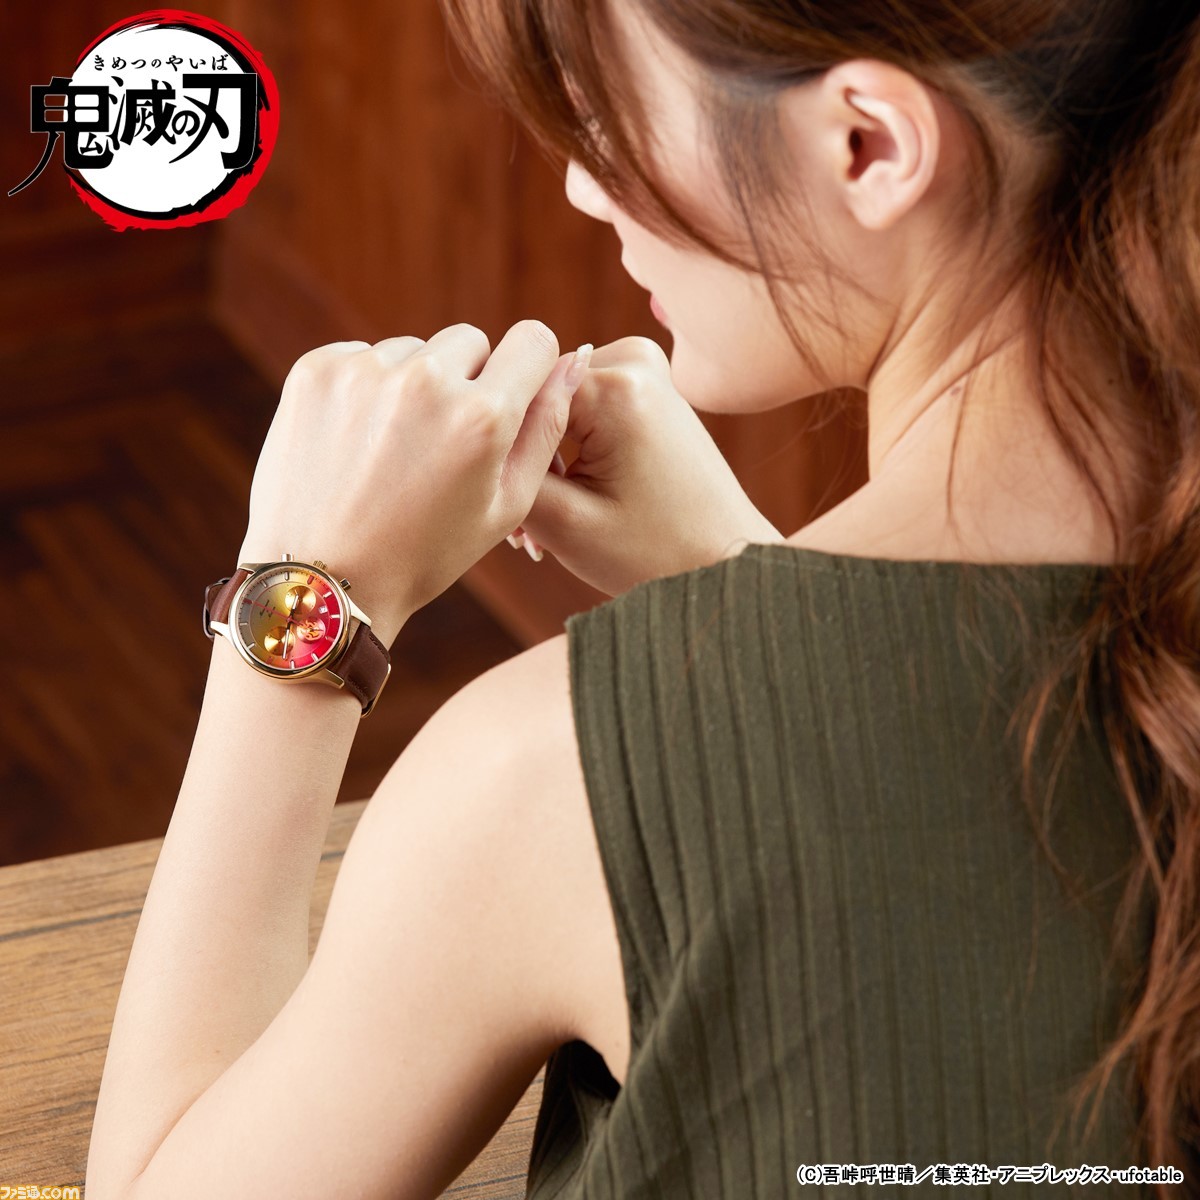 鬼滅の刃』×“TiCTAC”コラボ腕時計11月1日発売。炭治郎や禰豆子、善逸